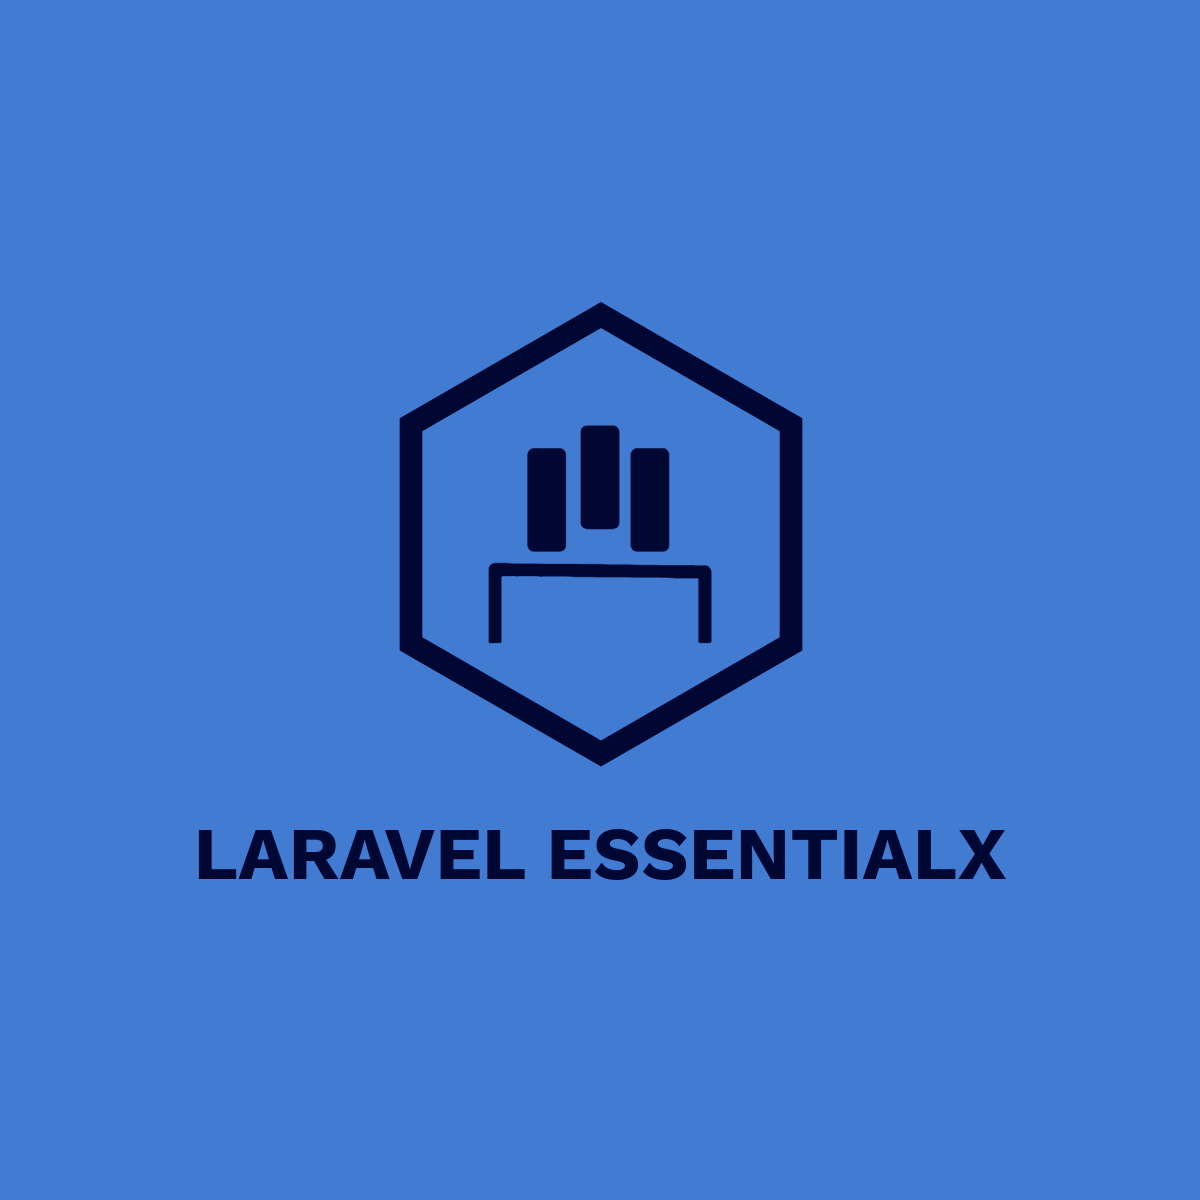 Laravel Essentialx